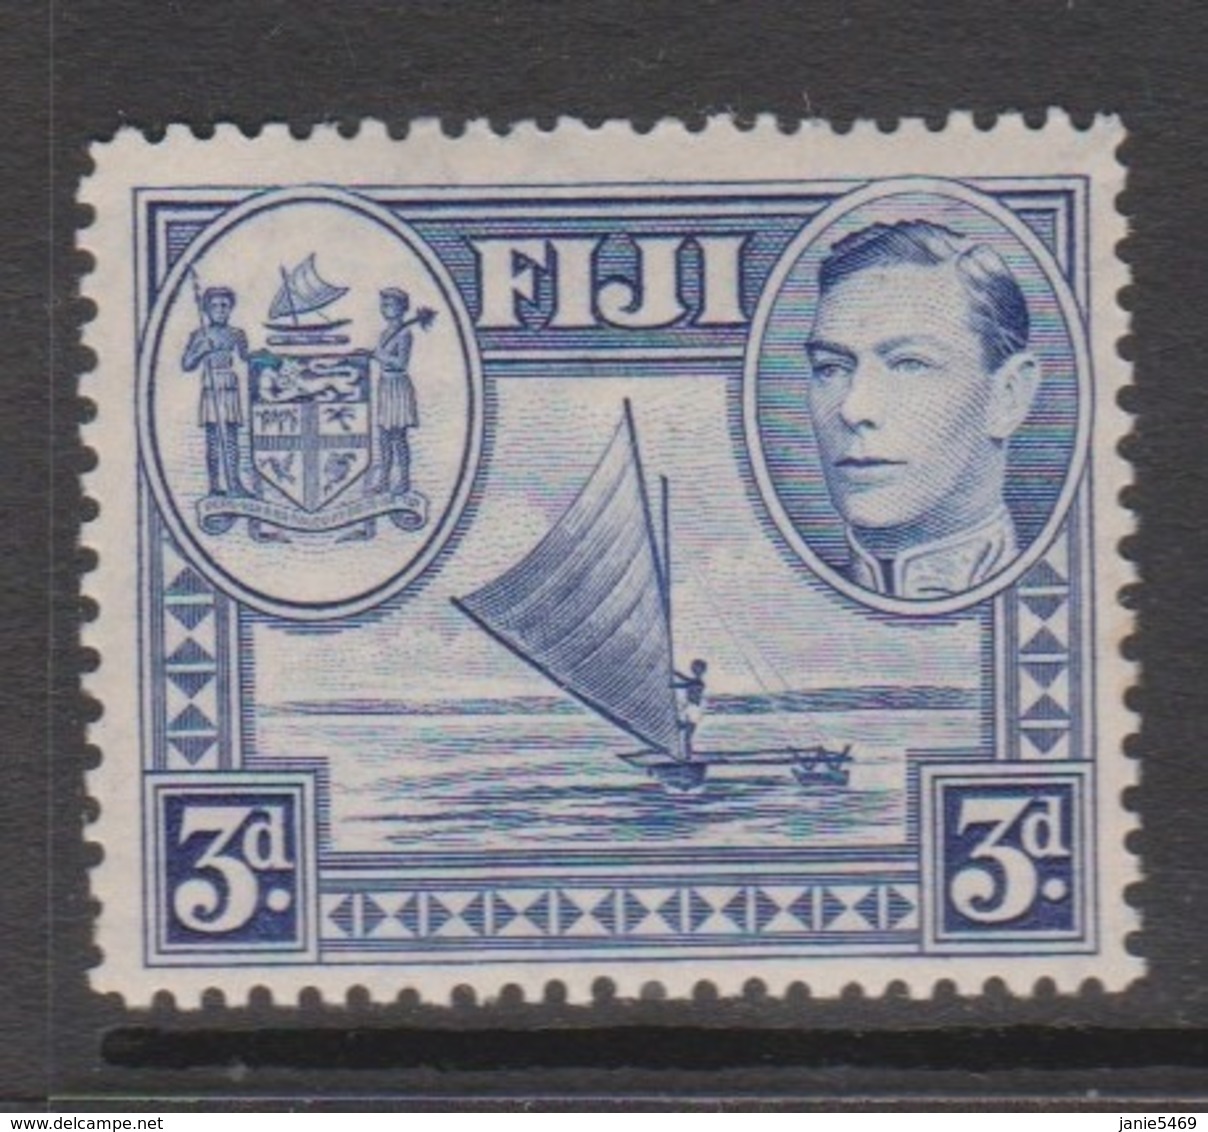 Fiji SG 257 1938-55  King George VI 3d Blue,Mint  Never Hinged - Fiji (1970-...)